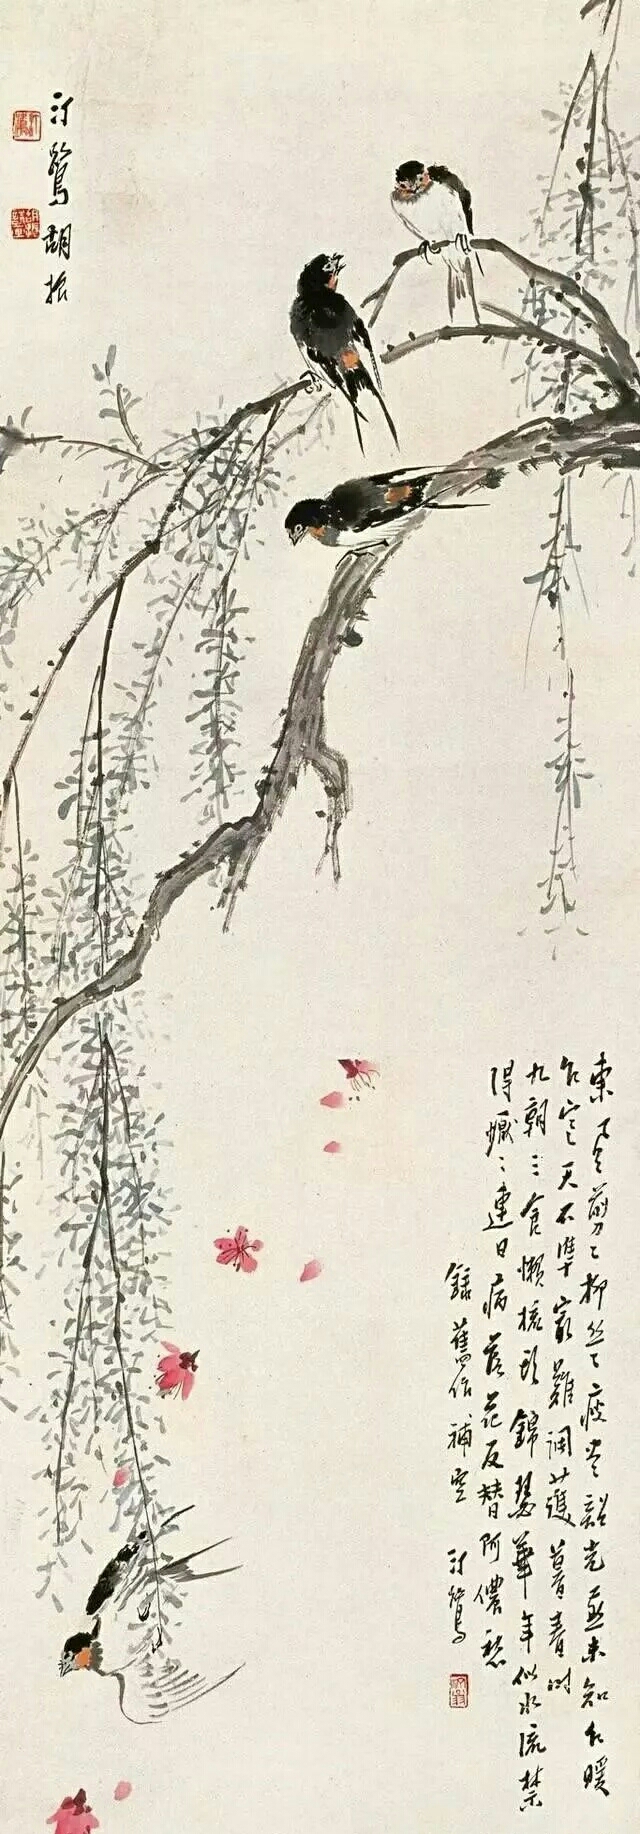 中国著名大师胡汀鹭精彩花鸟画作品